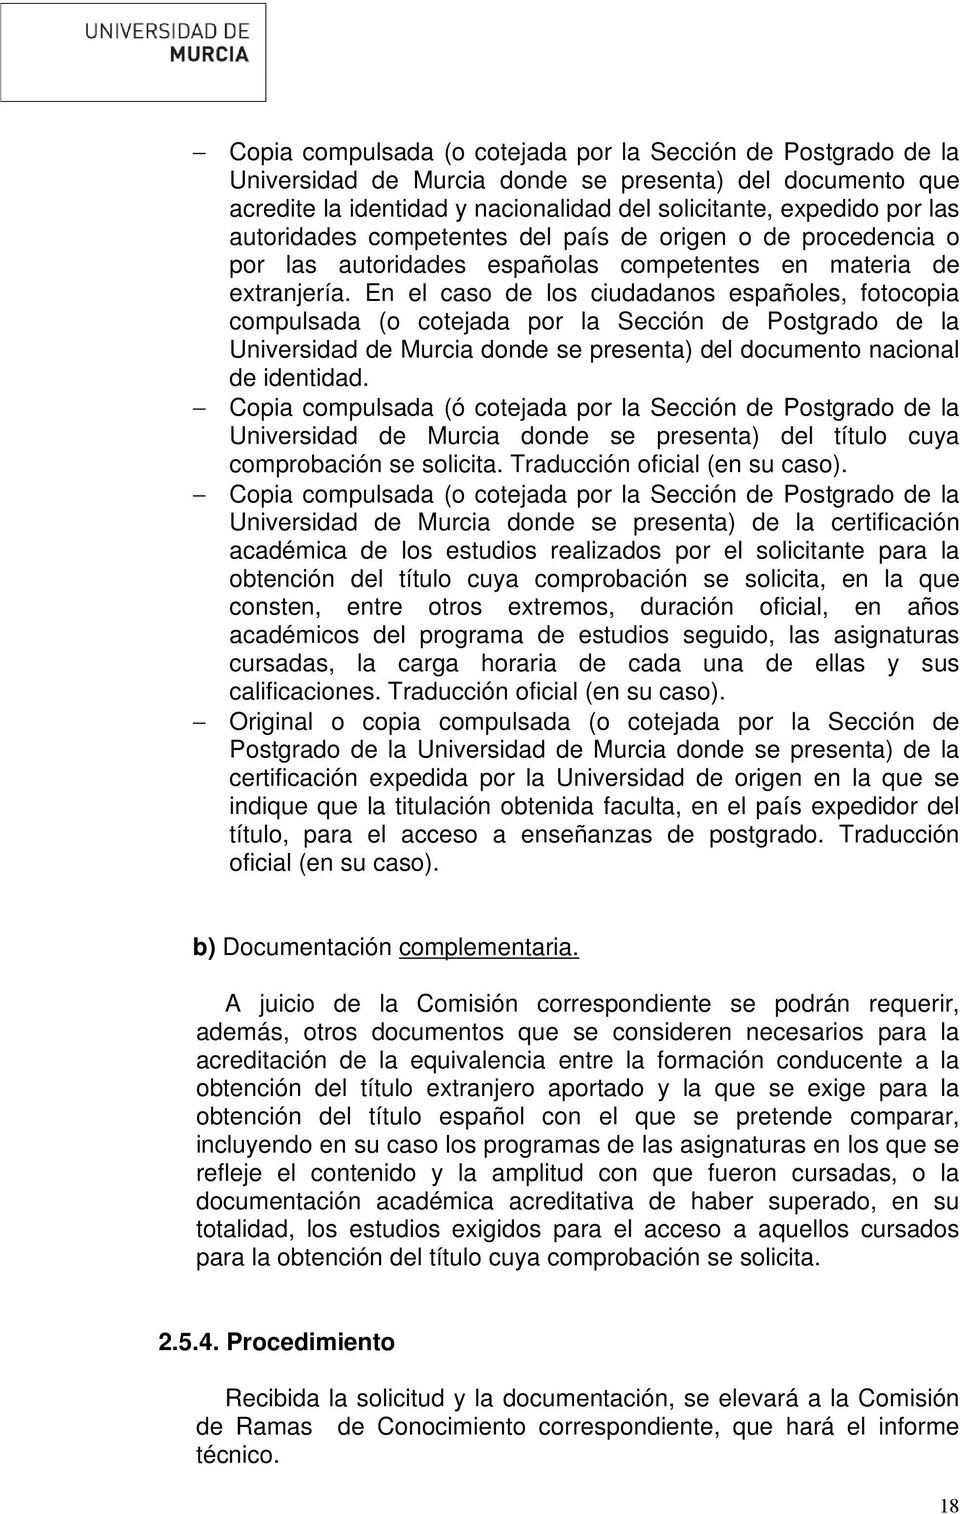 En el caso de los ciudadanos españoles, fotocopia compulsada (o cotejada por la Sección de Postgrado de la Universidad de Murcia donde se presenta) del documento nacional de identidad.